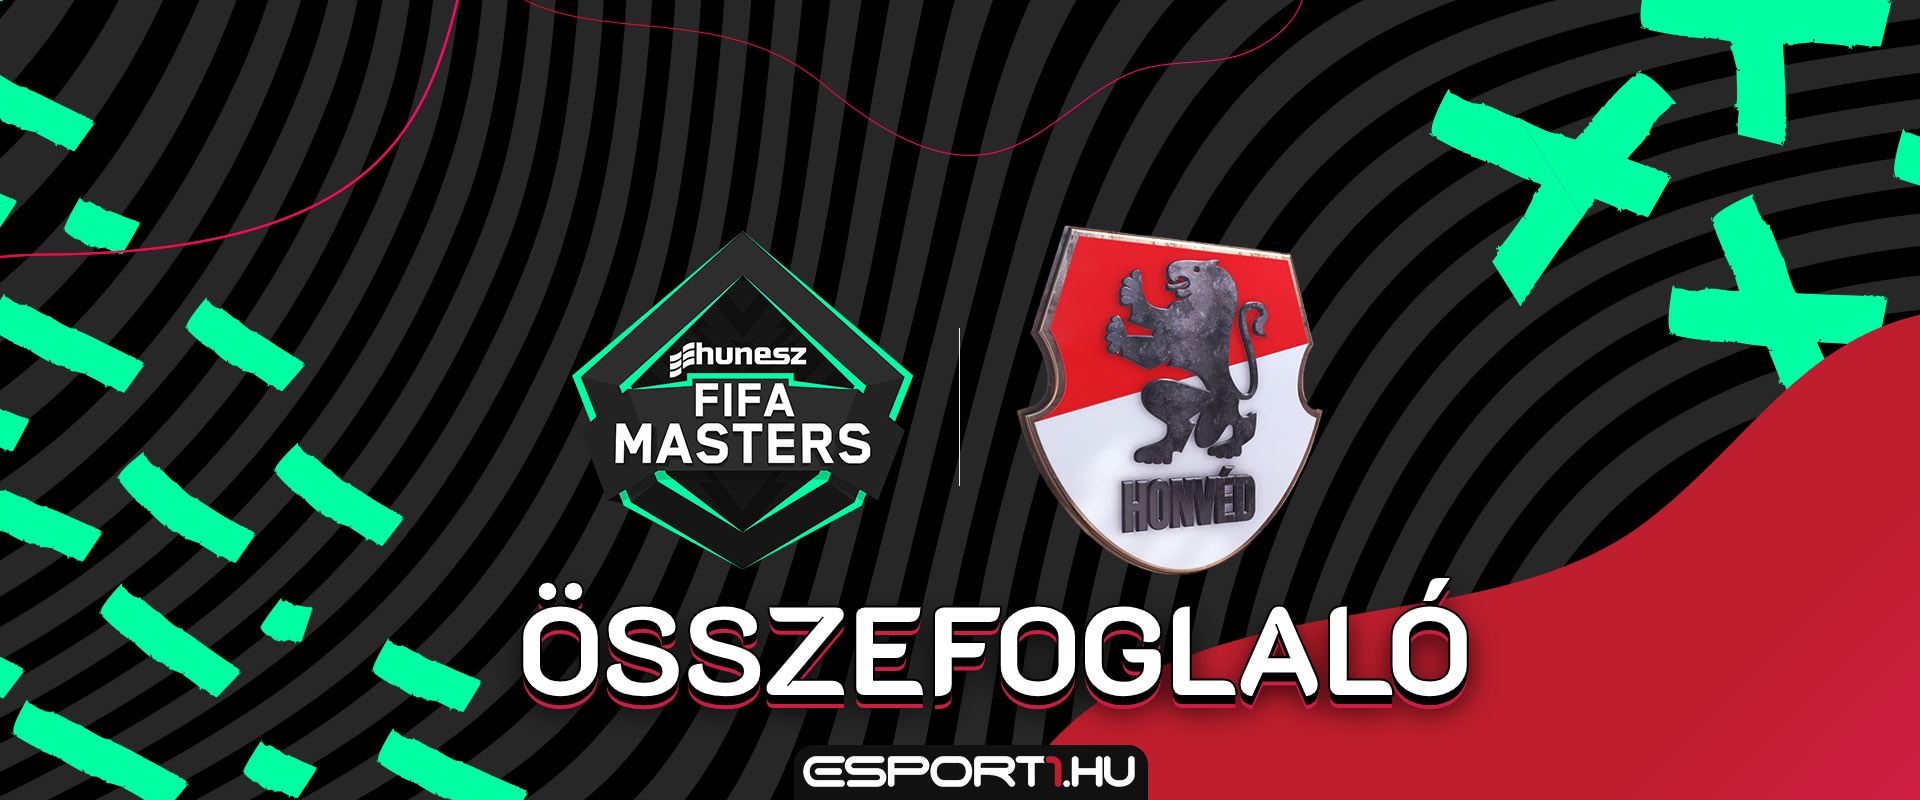 MTK játékos nyerte a HUNESZ FIFA Masters első állomását PS4-en!